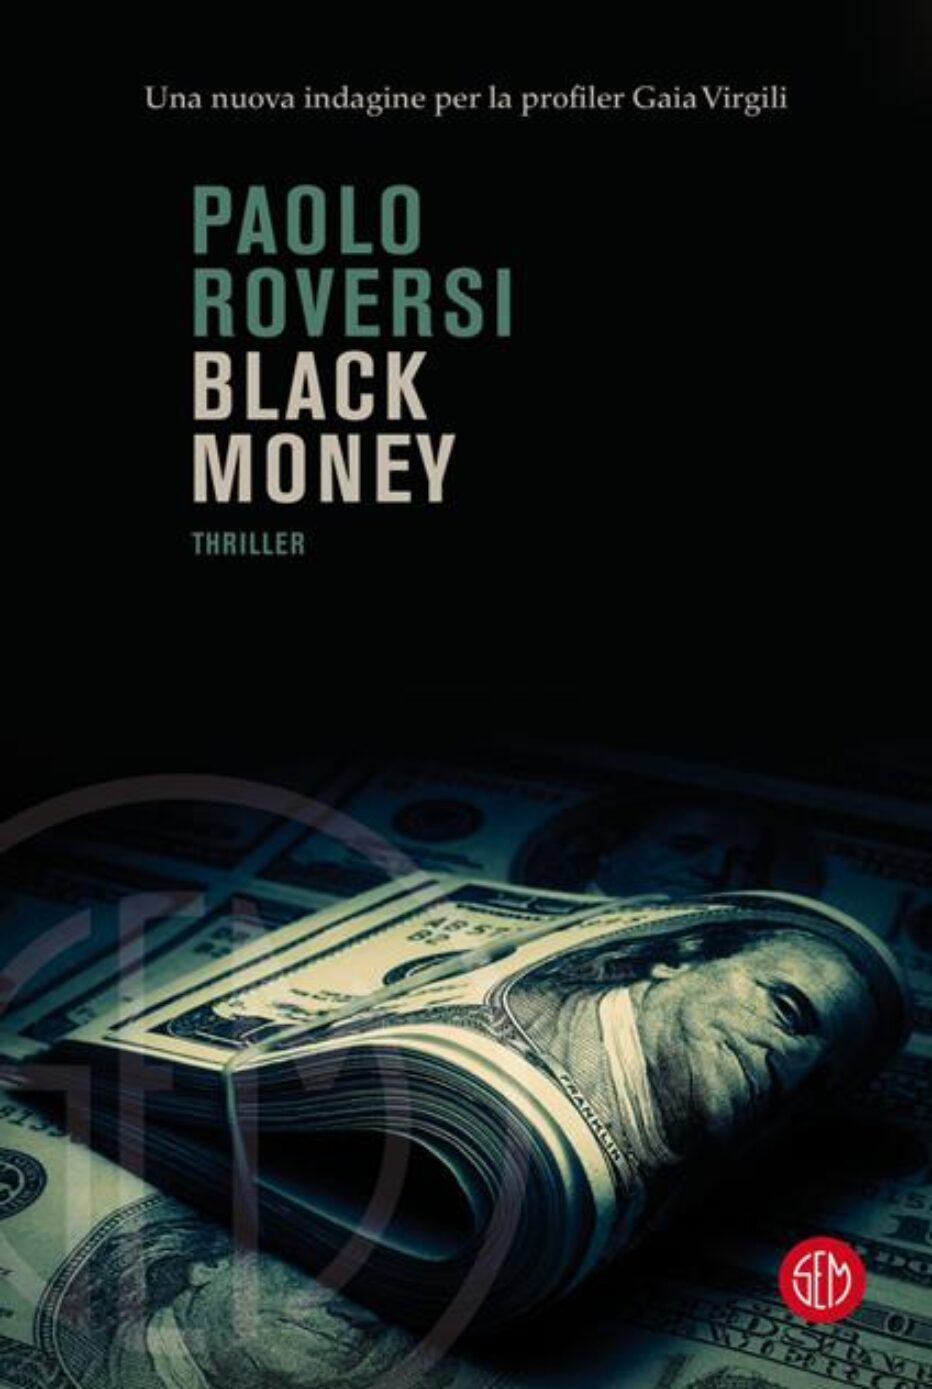 Paolo Roversi ci parla del suo ultimo giallo: “Black Money”